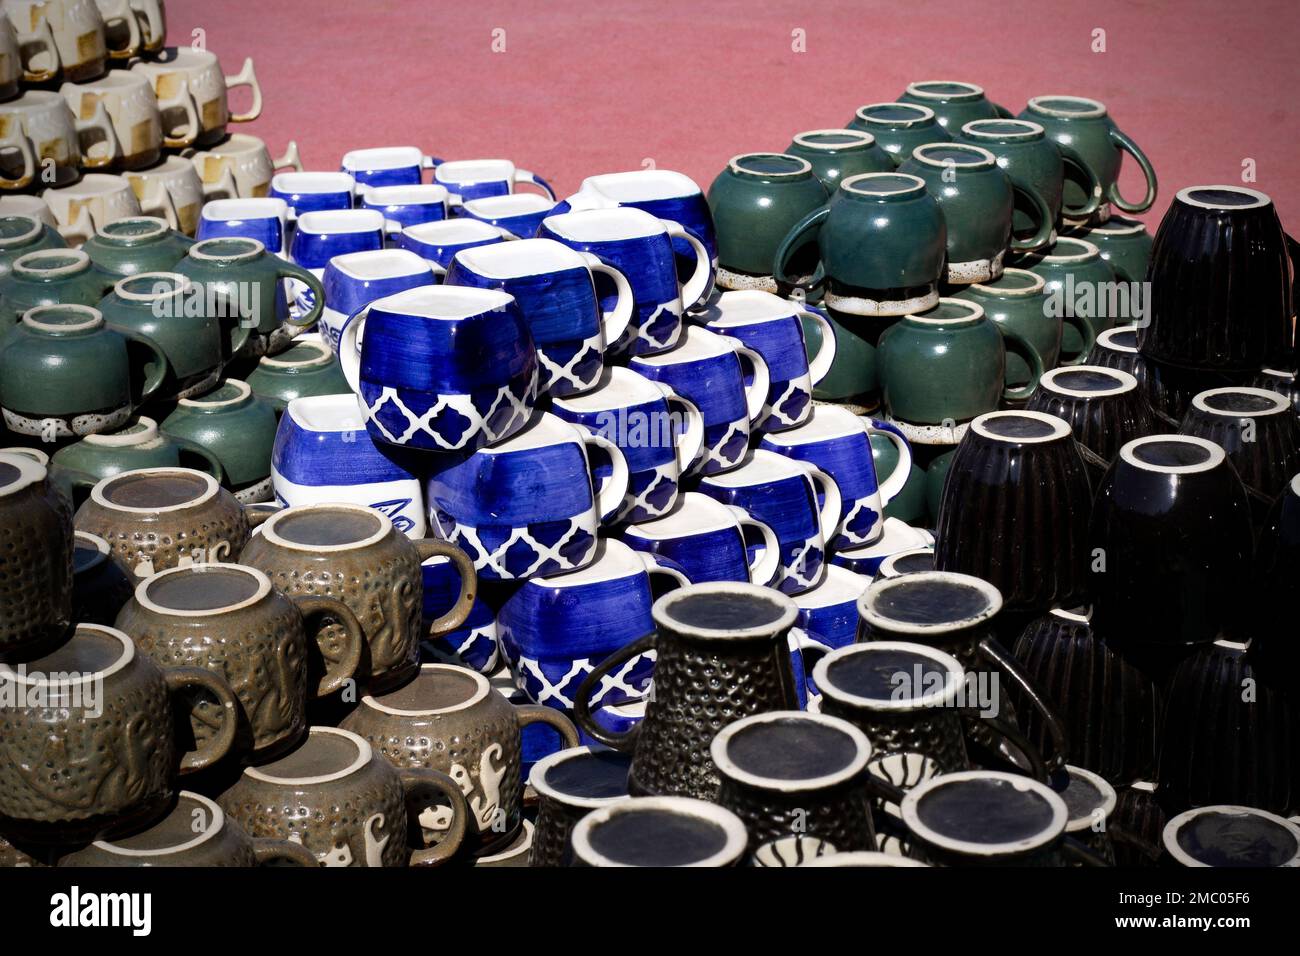 Un gros plan de tasses en céramique colorées avec des motifs culturels asiatiques Banque D'Images